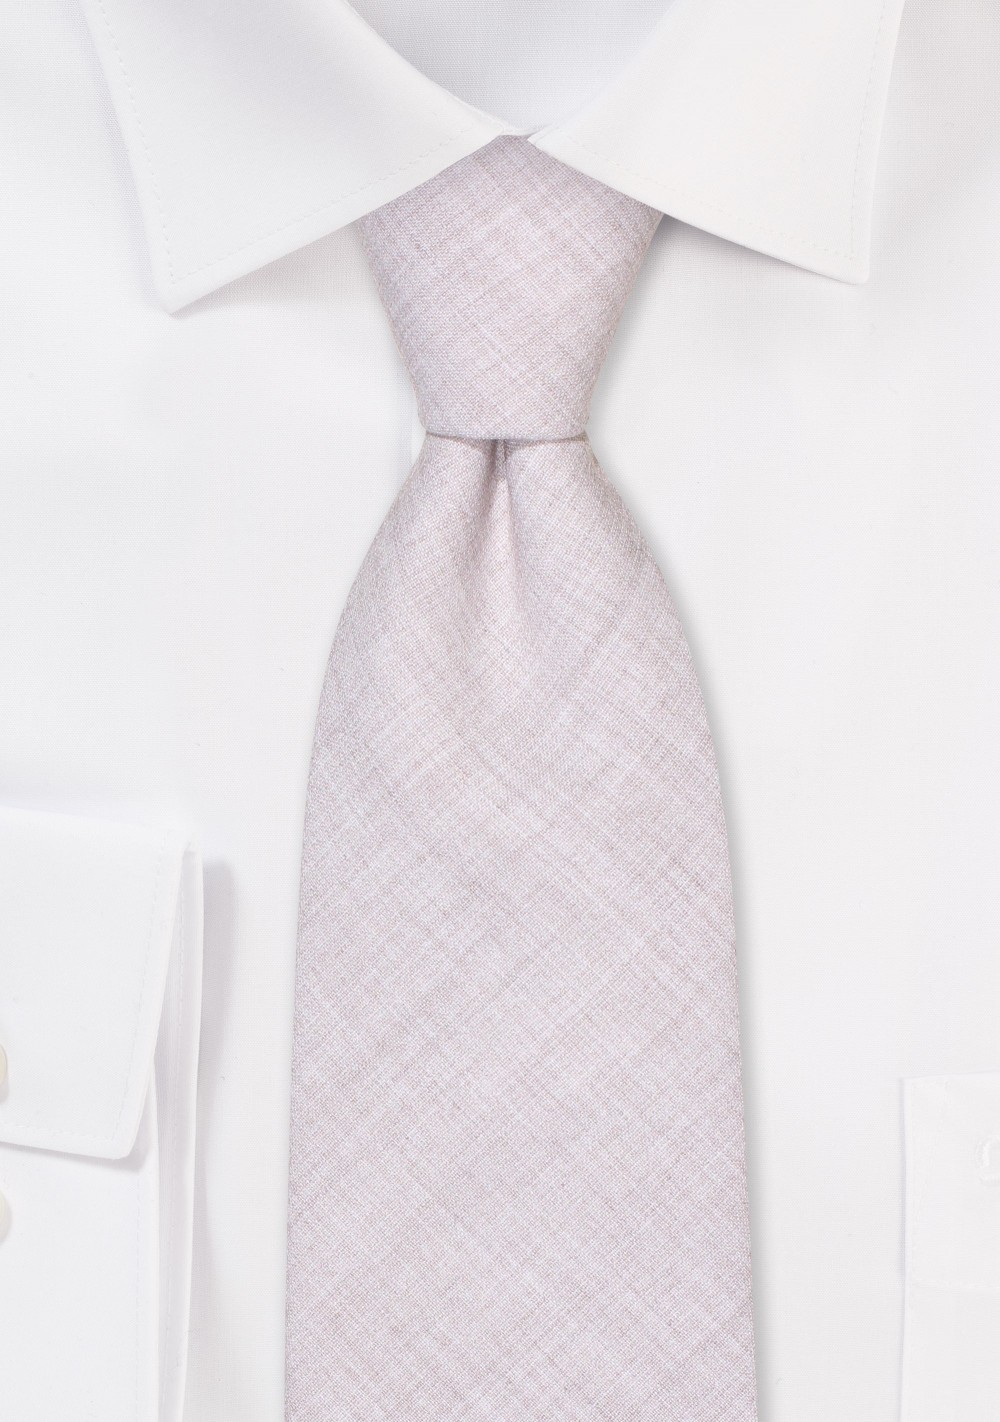 Linen Texture Mens Tie in Stone Gray